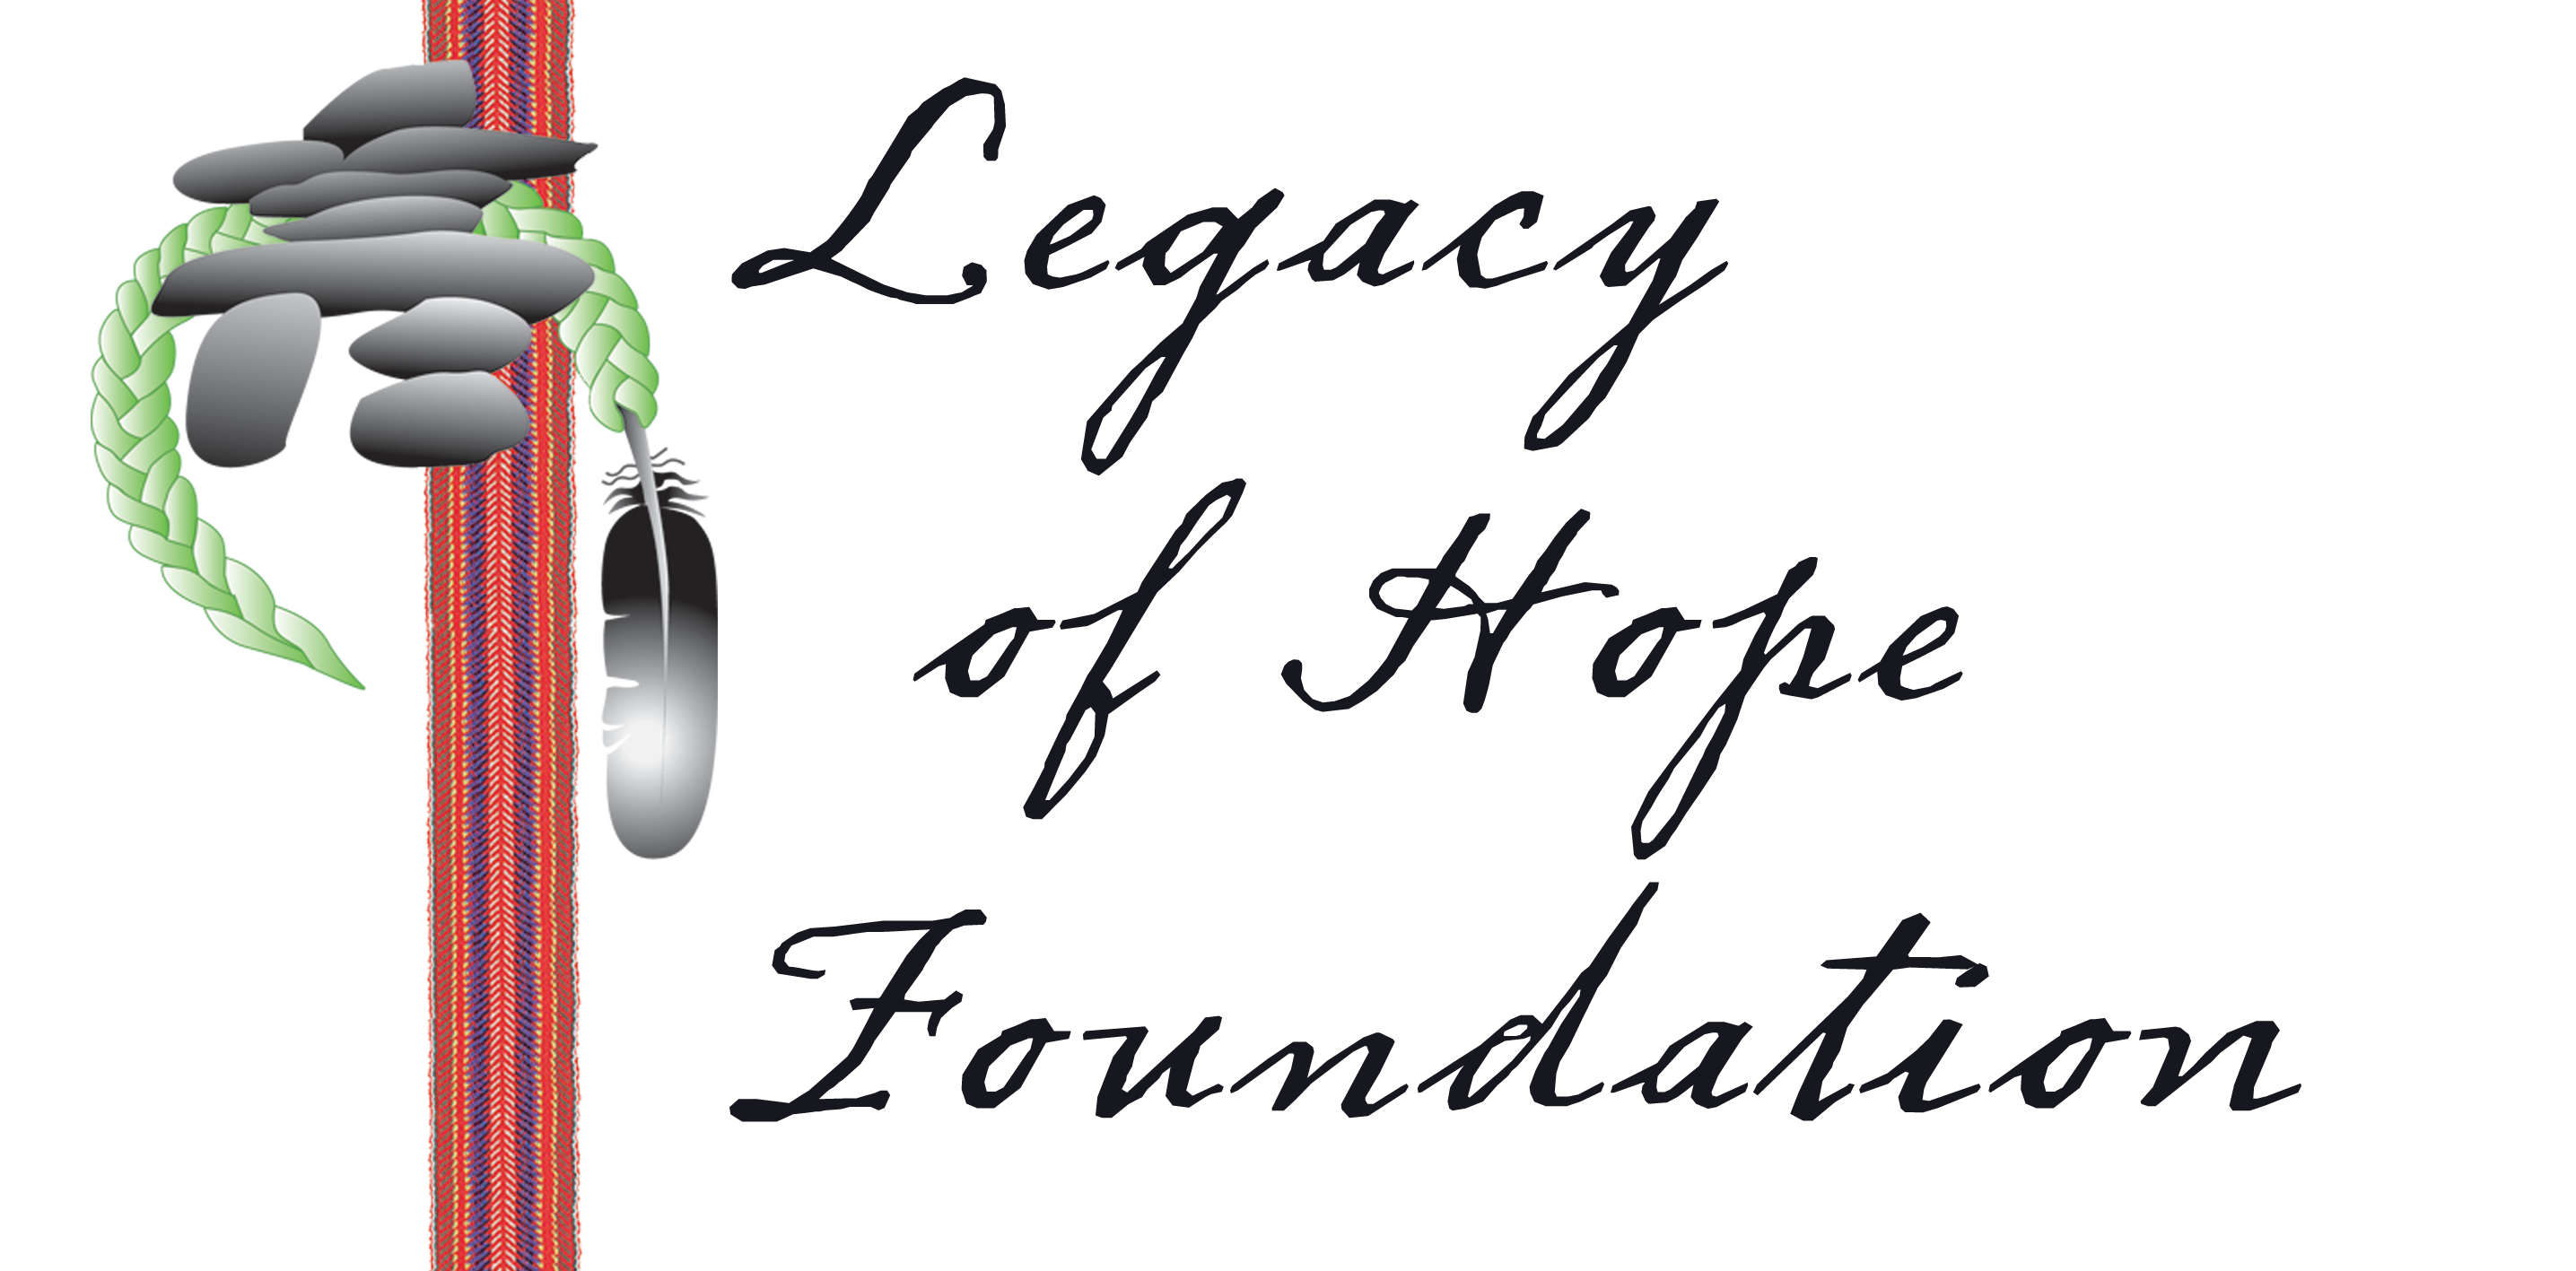 Legacy of Hope Foundation – Indigenous-led charitable organization